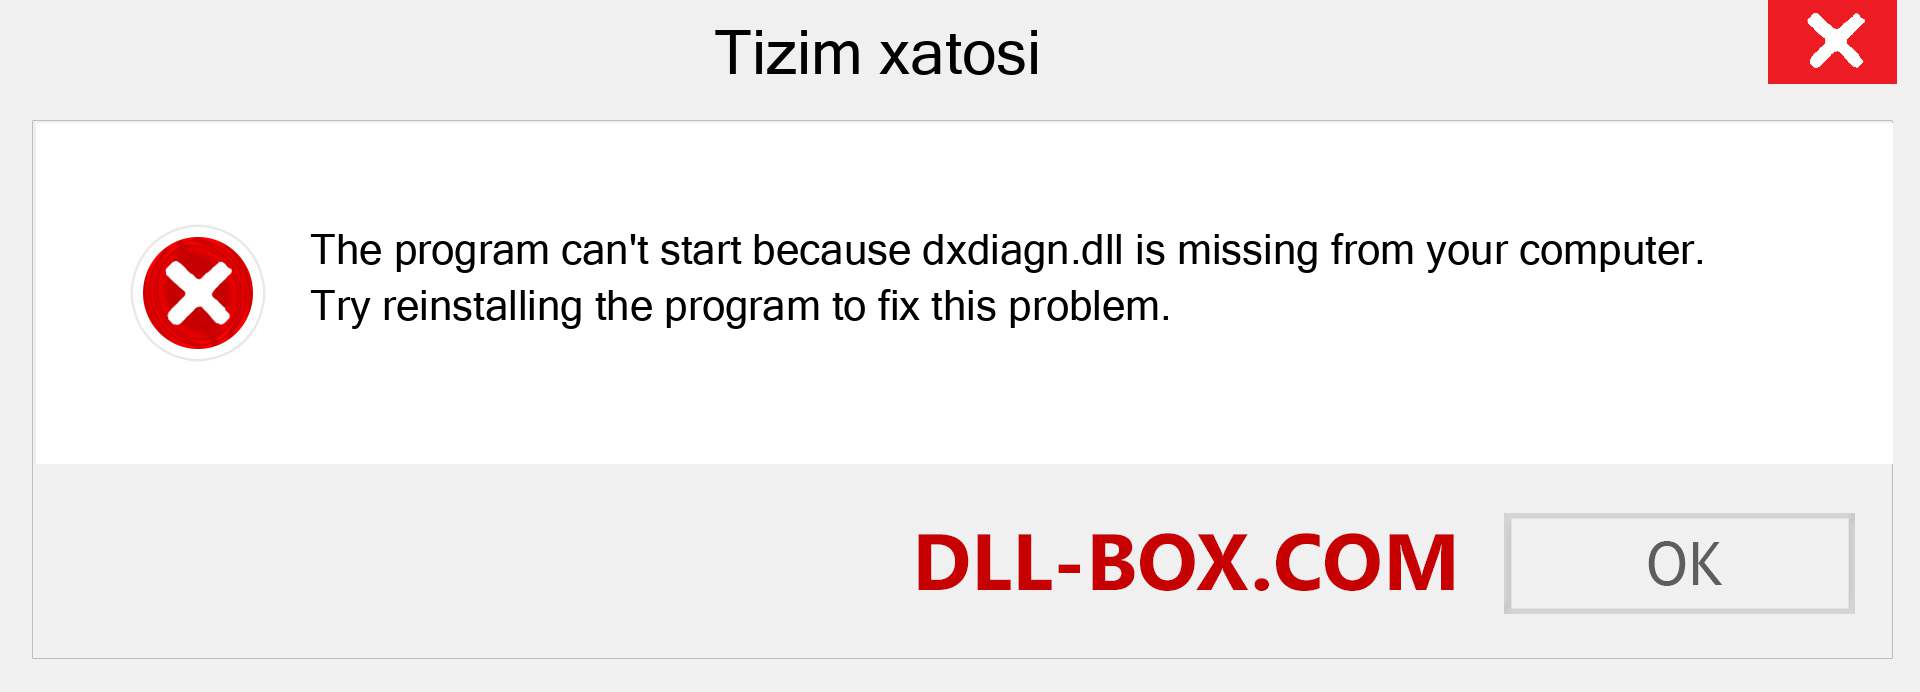 dxdiagn.dll fayli yo'qolganmi?. Windows 7, 8, 10 uchun yuklab olish - Windowsda dxdiagn dll etishmayotgan xatoni tuzating, rasmlar, rasmlar